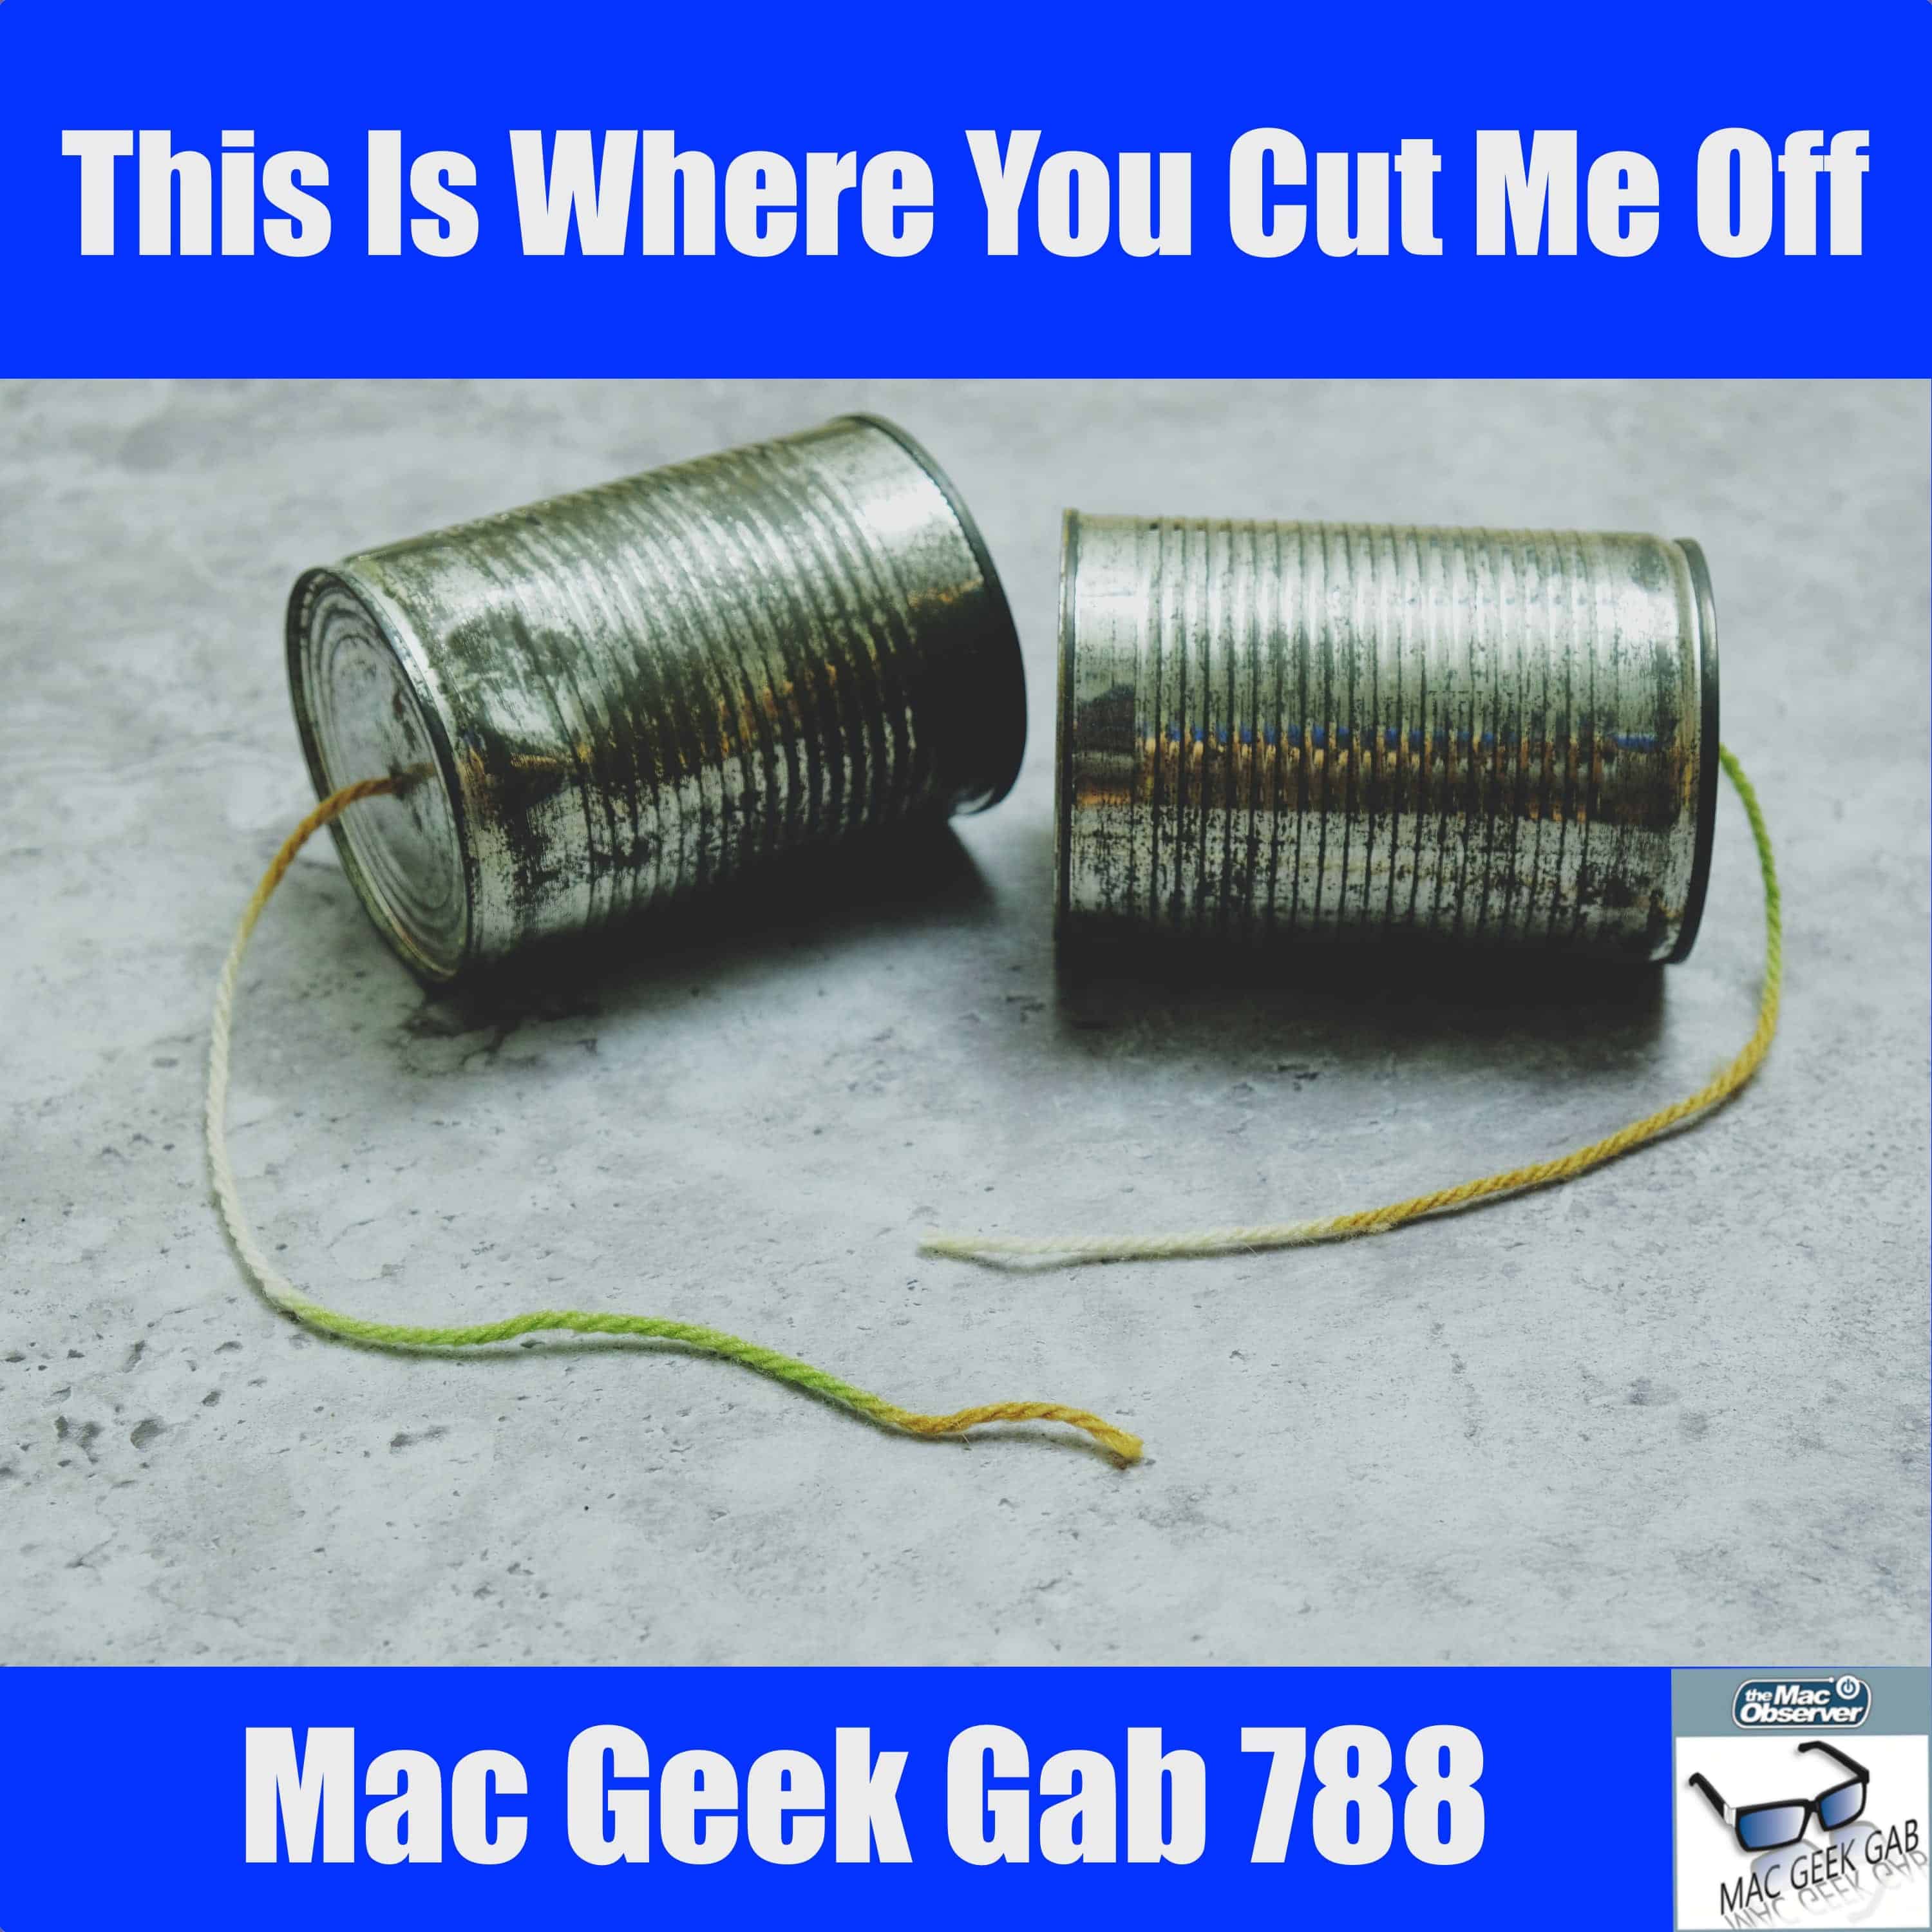 This is Where You Cut Me Off – Mac Geek Gab 788